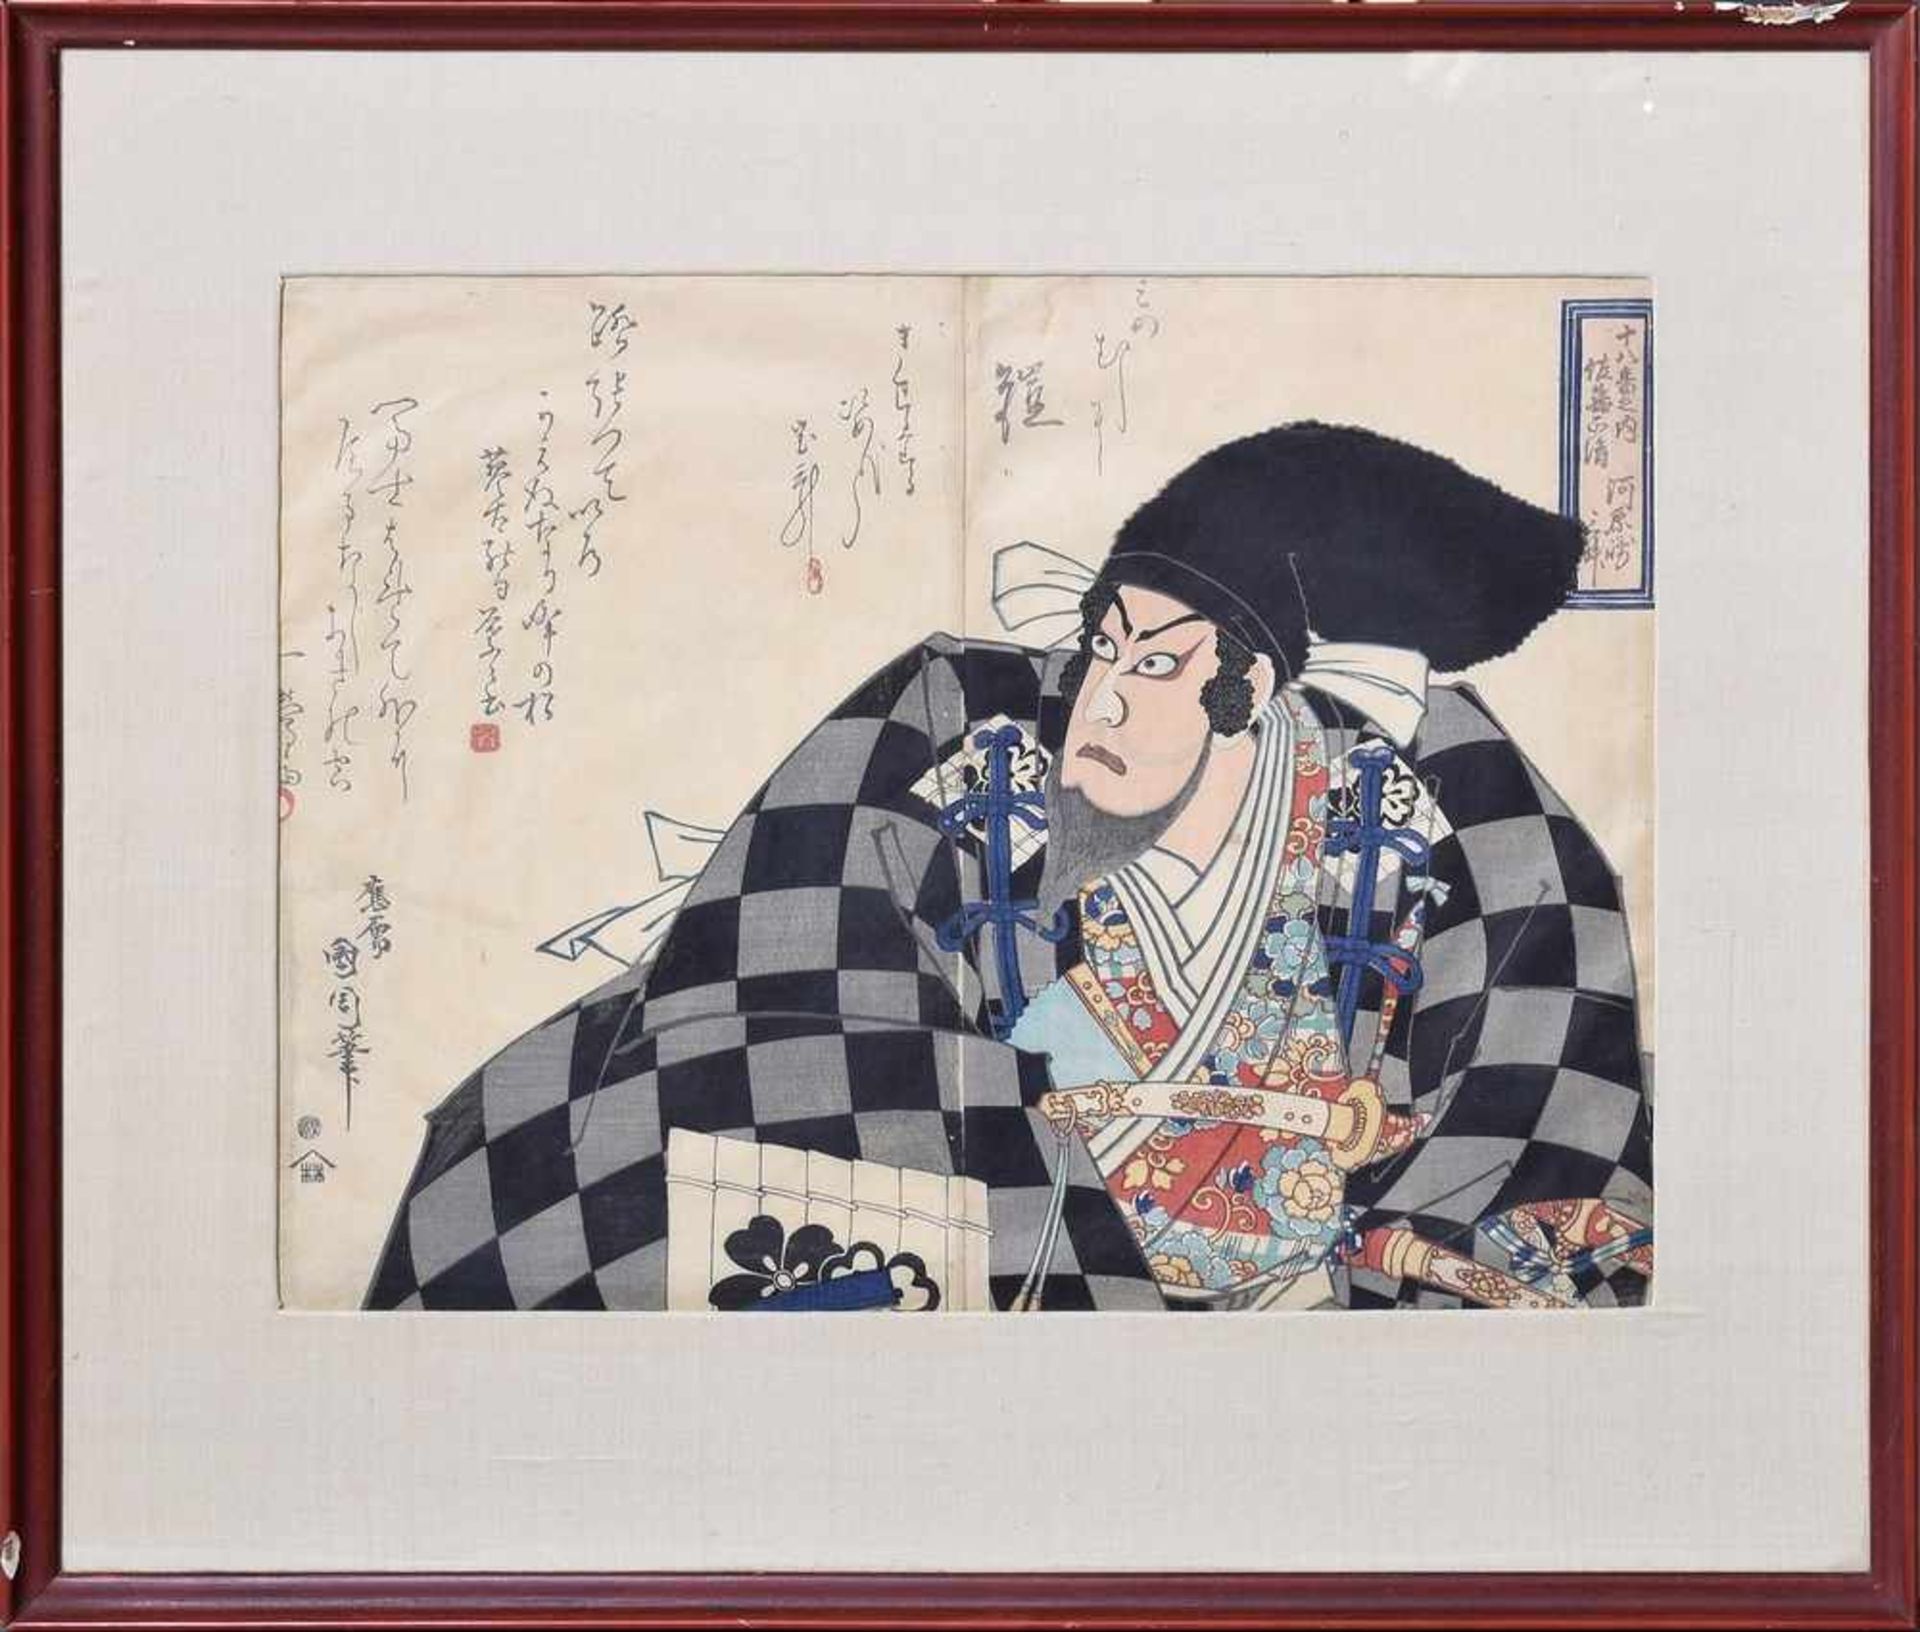 Kunichika, Toyohara (1835-1900) "Schauspieler mit schwarzer Kopfbedeckung", Farbholzschnitt,